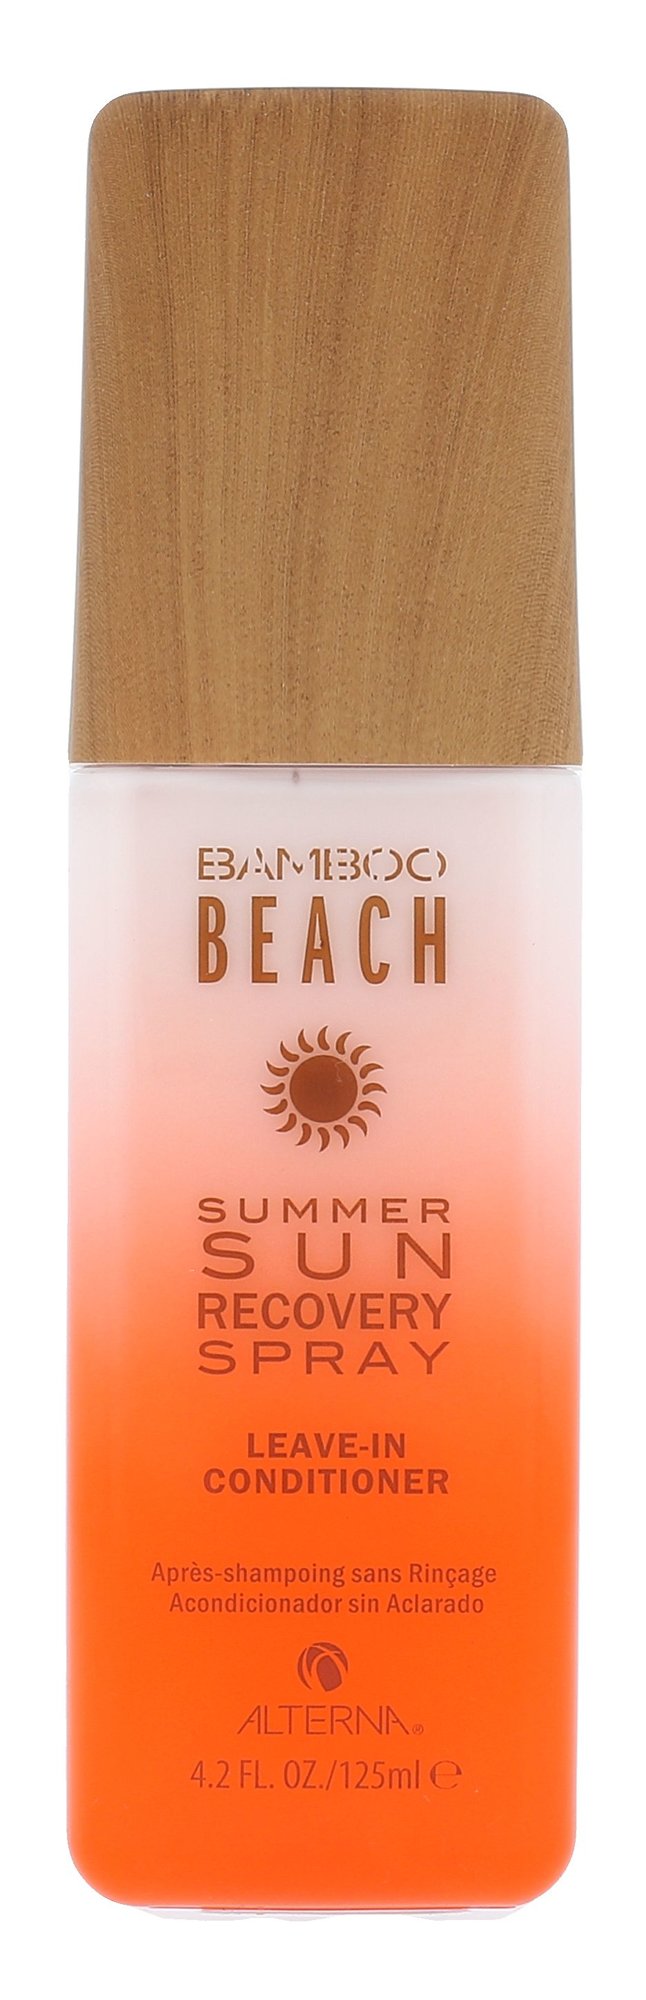 Alterna Bamboo Beach Sun Recovery kondicionierius